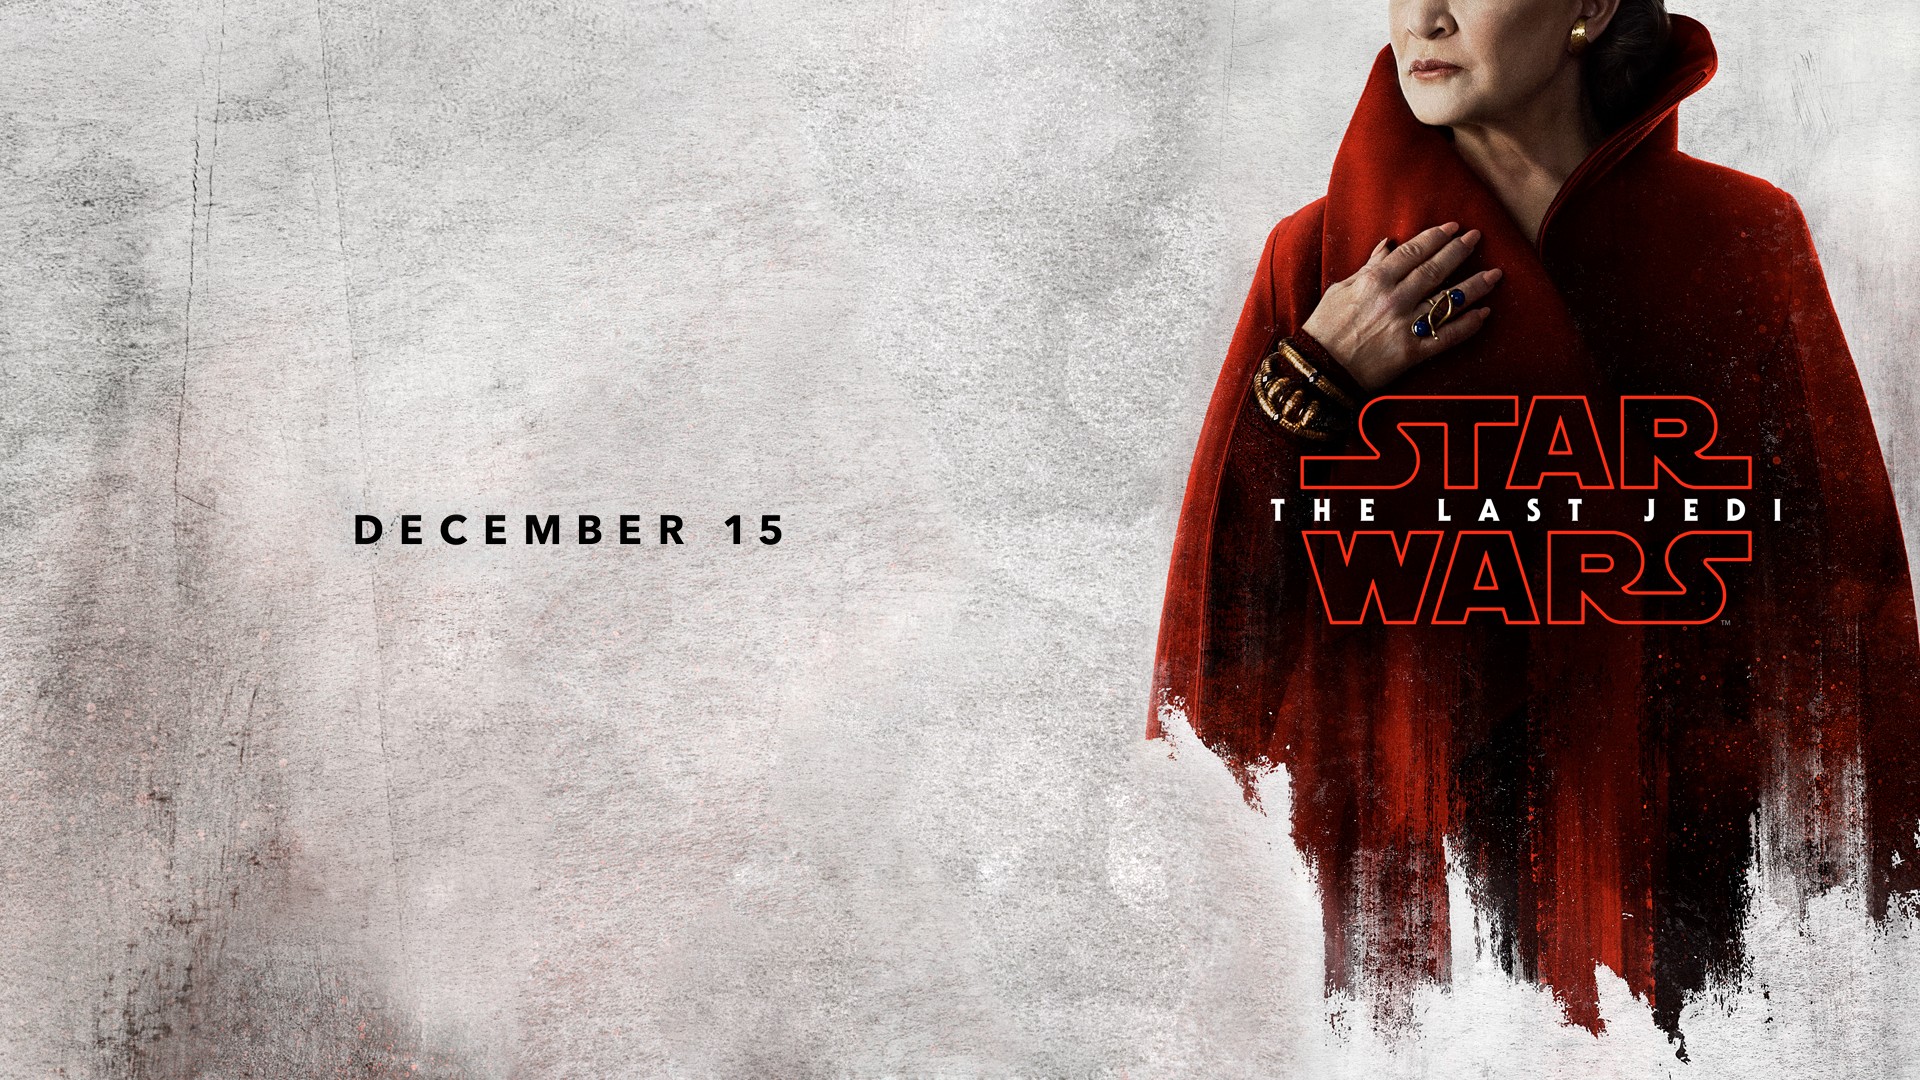 Star Wars: The Last Jedi, Movies Wallpaper